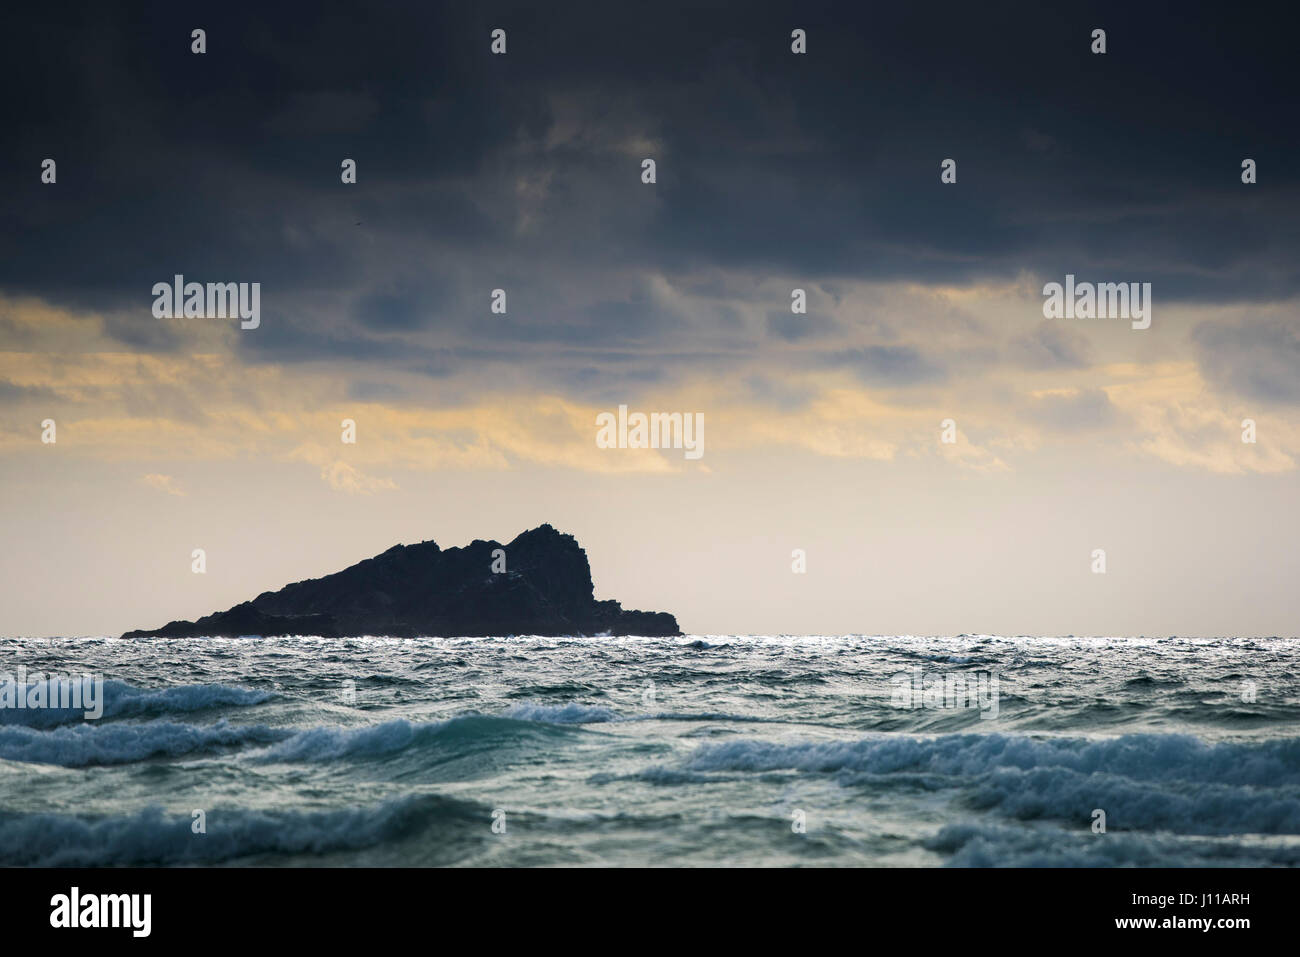 La Isla de ganso dorado resplandor nocturno recolección de agua de mar de nubes atmosférico; varados Foto de stock